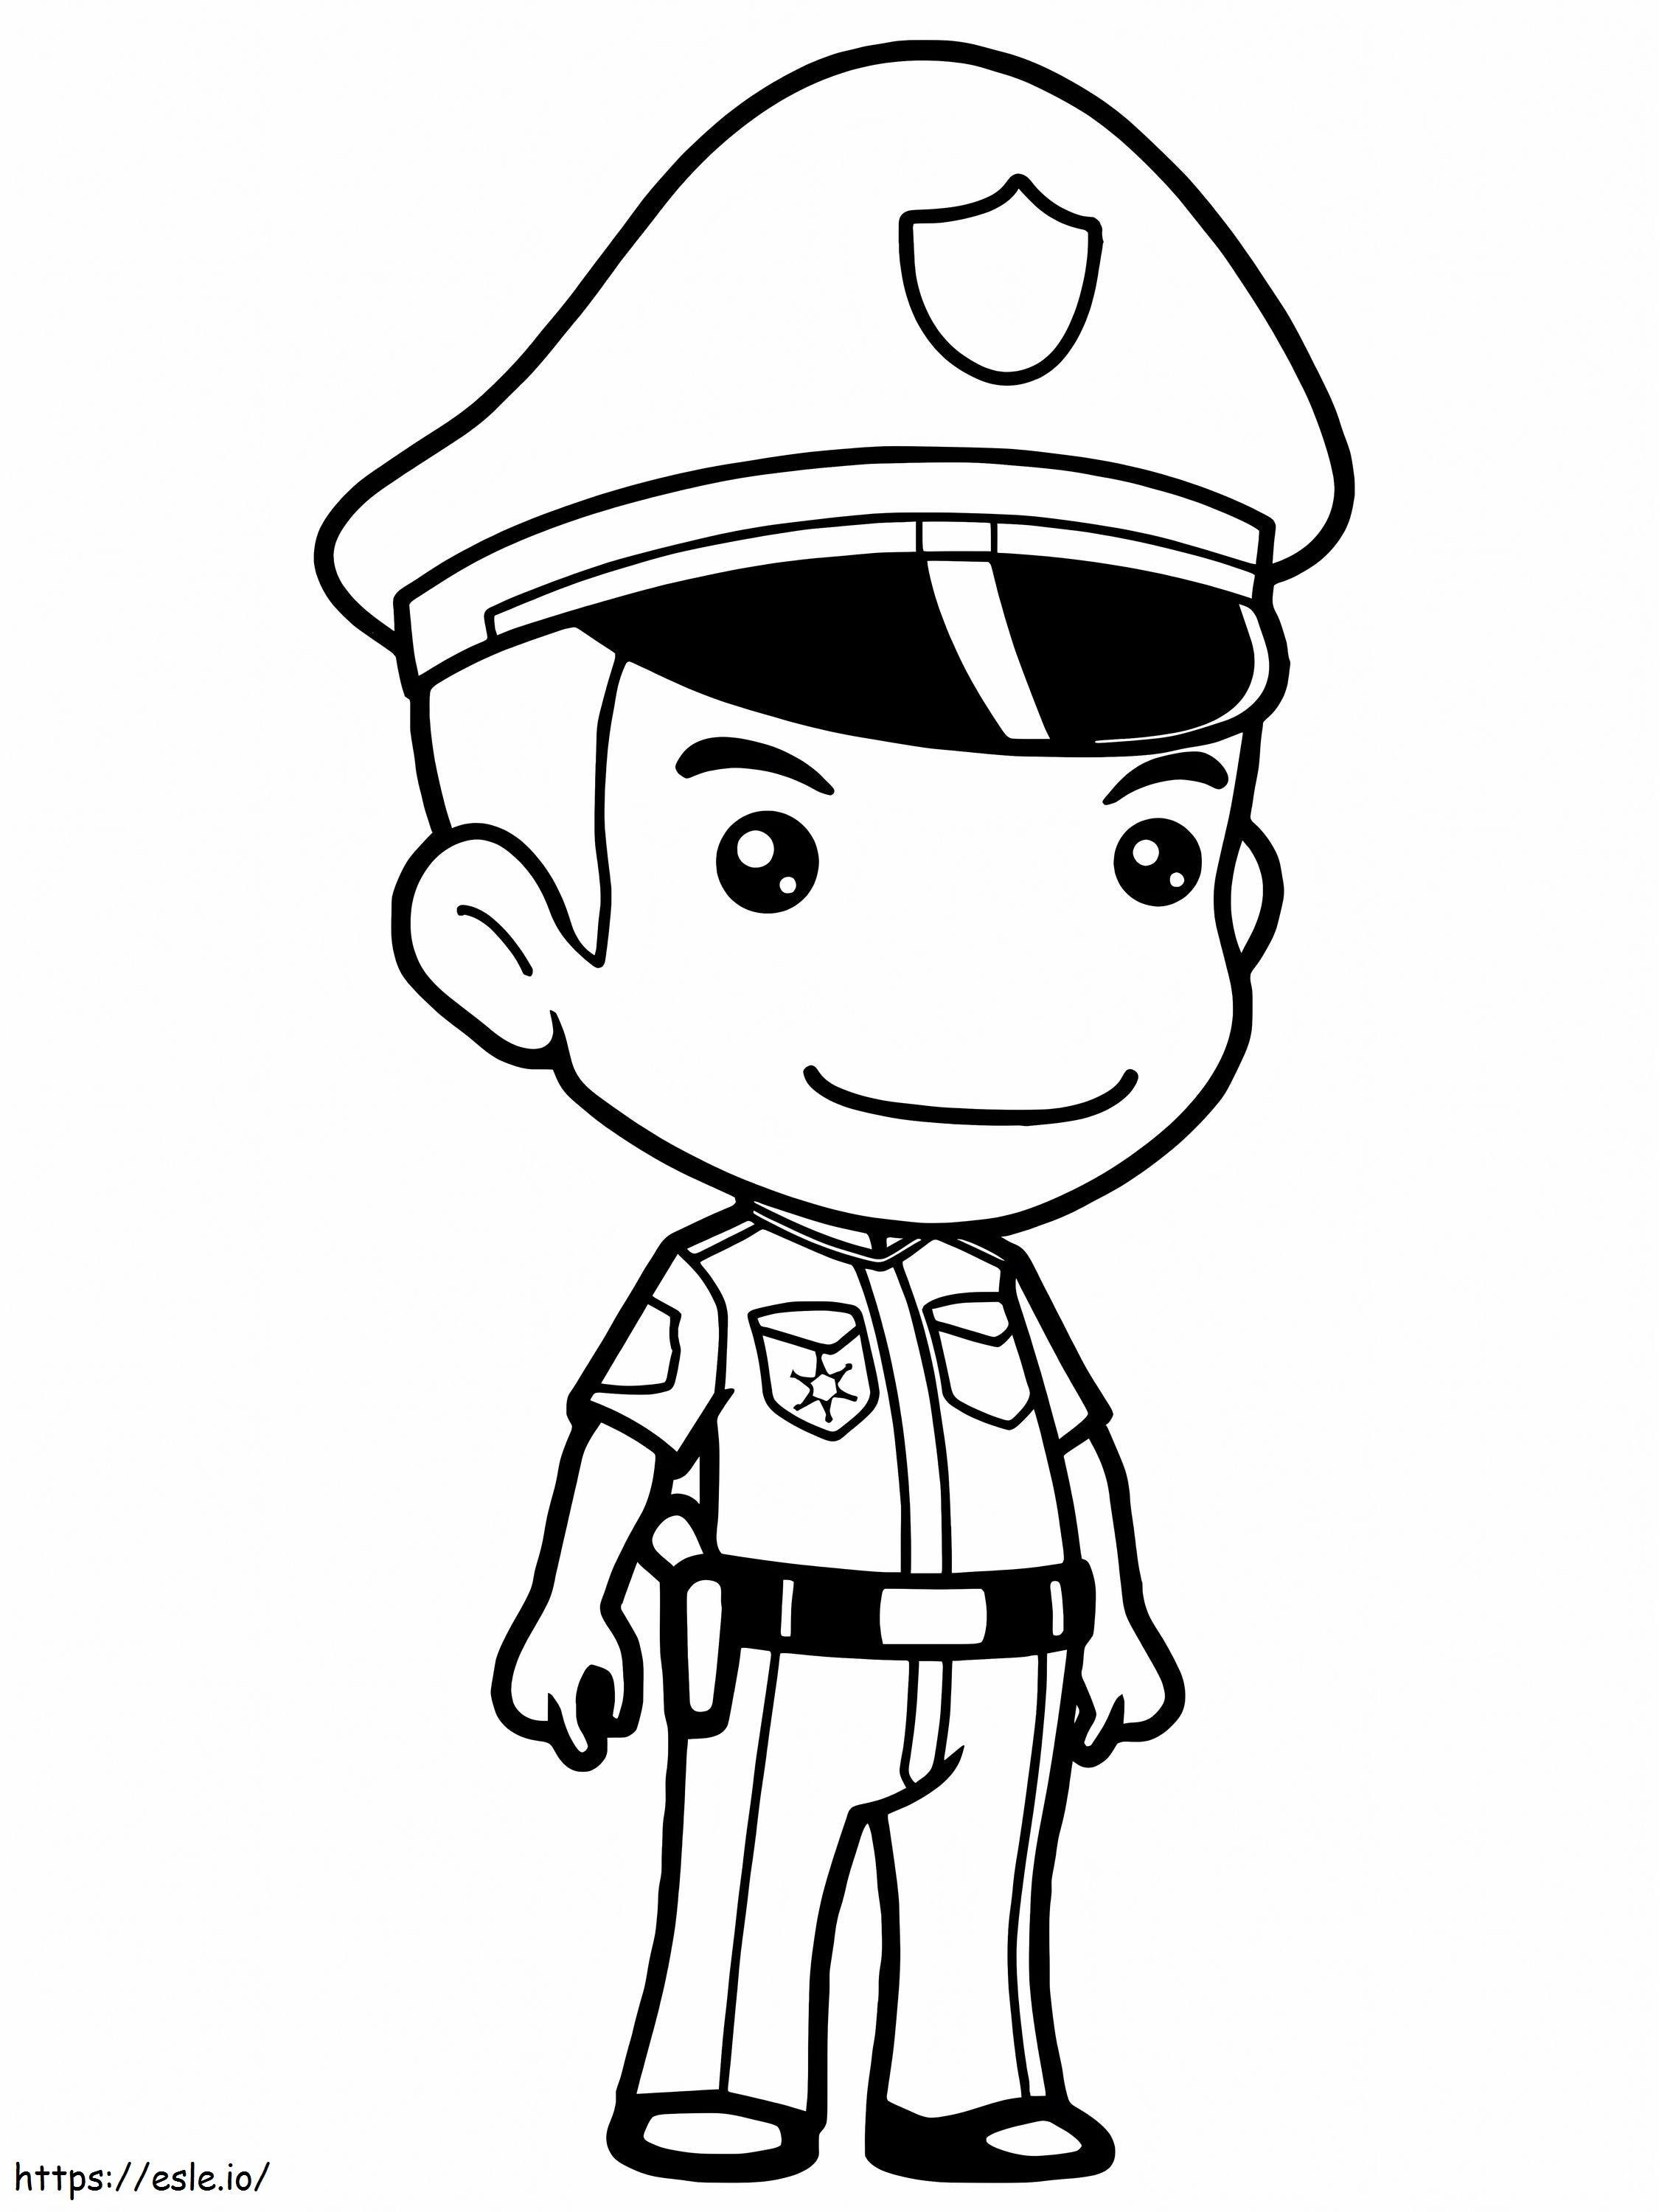 policial bonito para colorir